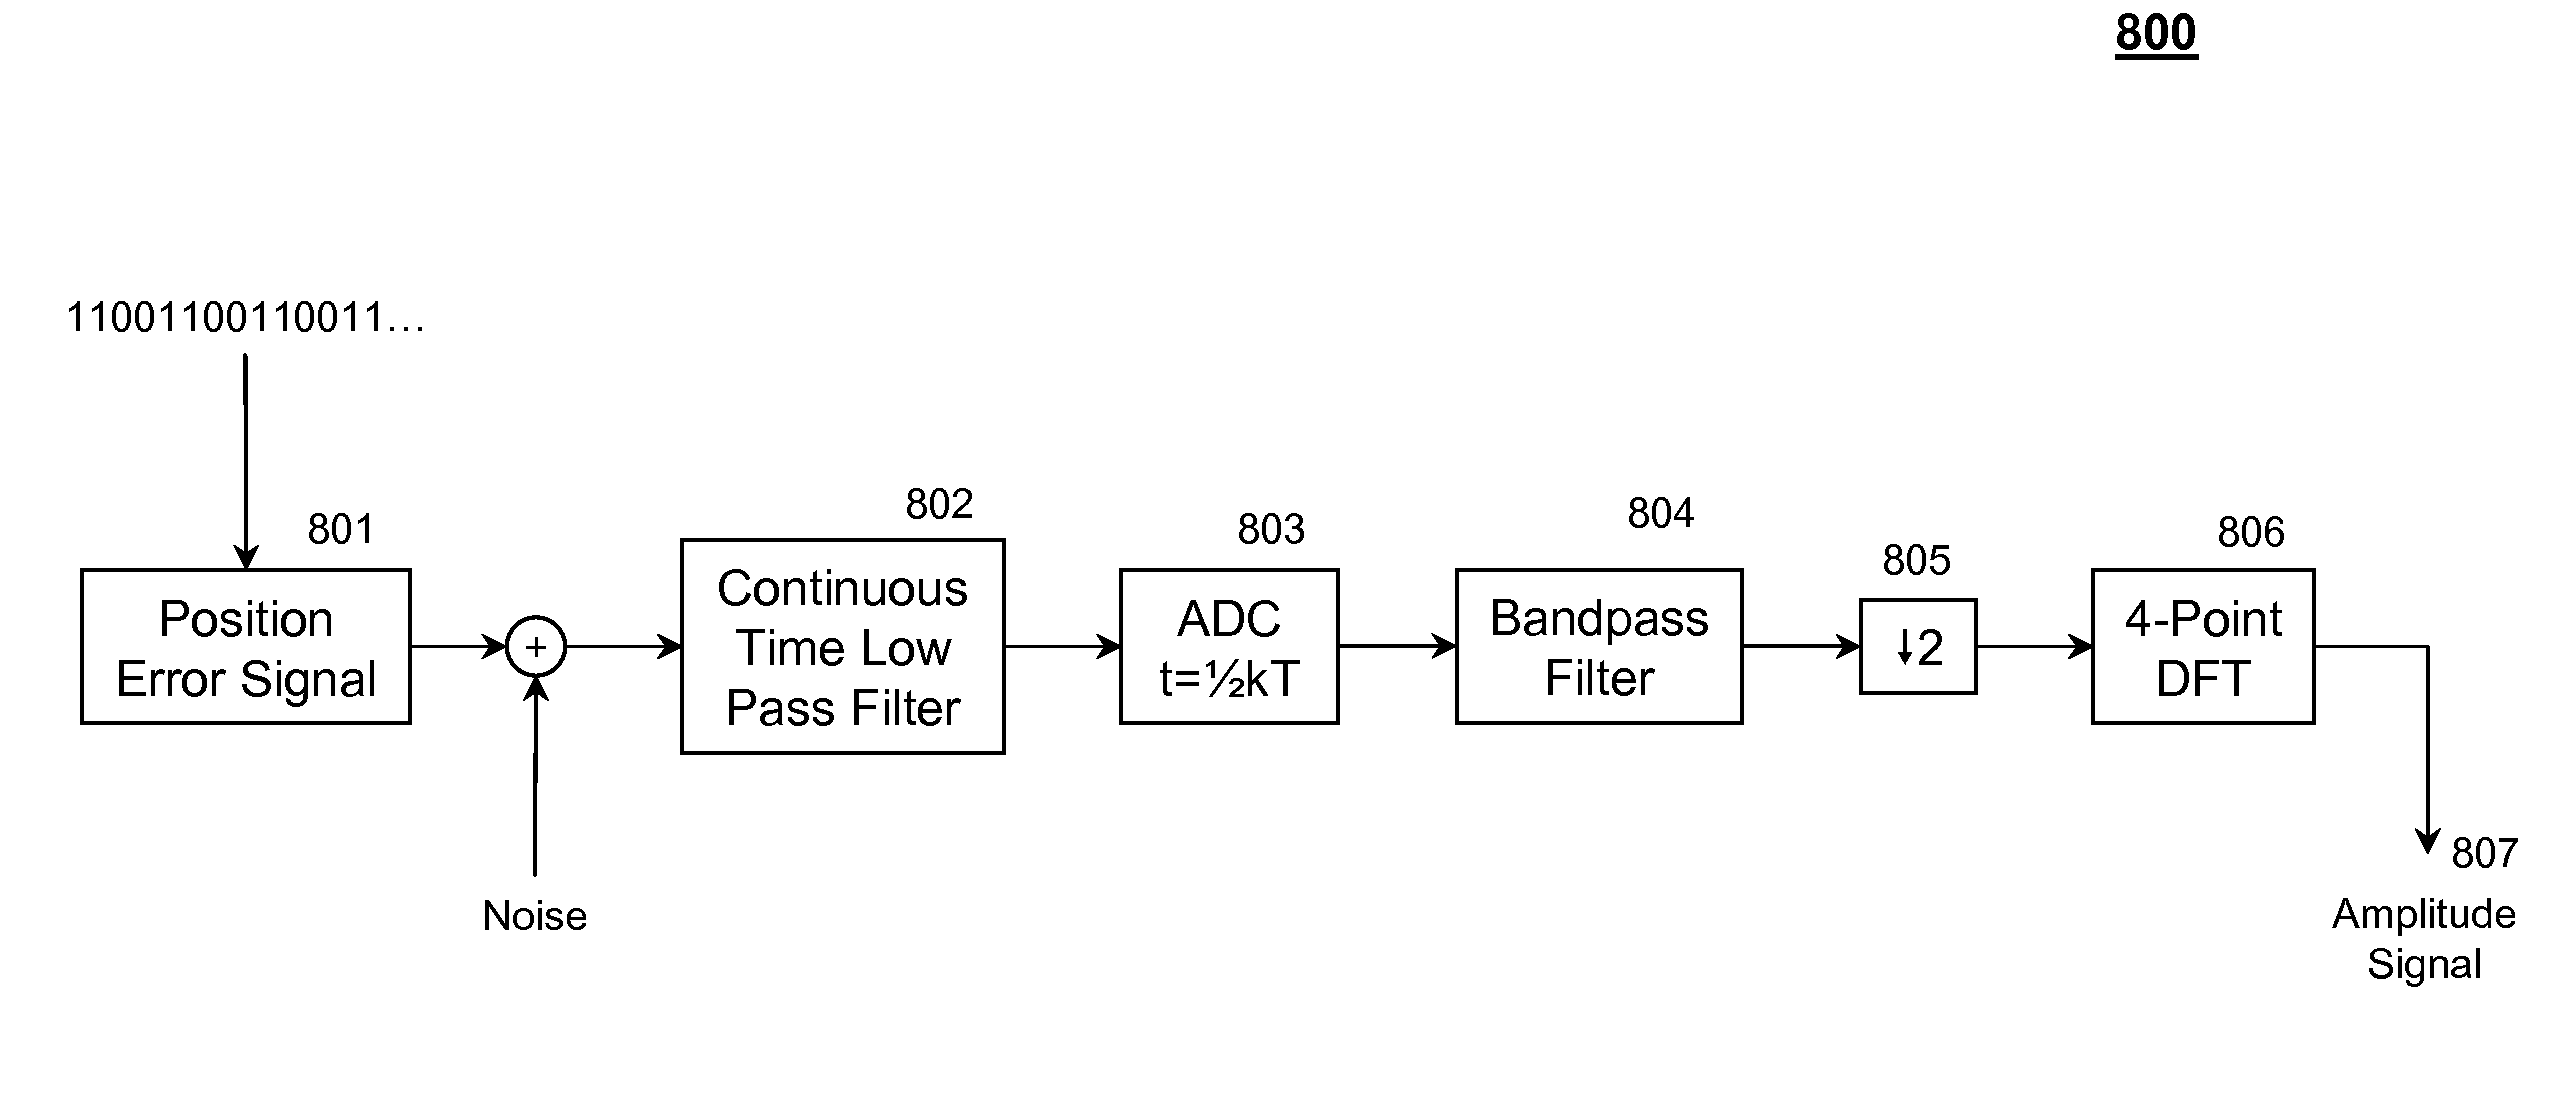 Up-sampled filtering for servo demodulation